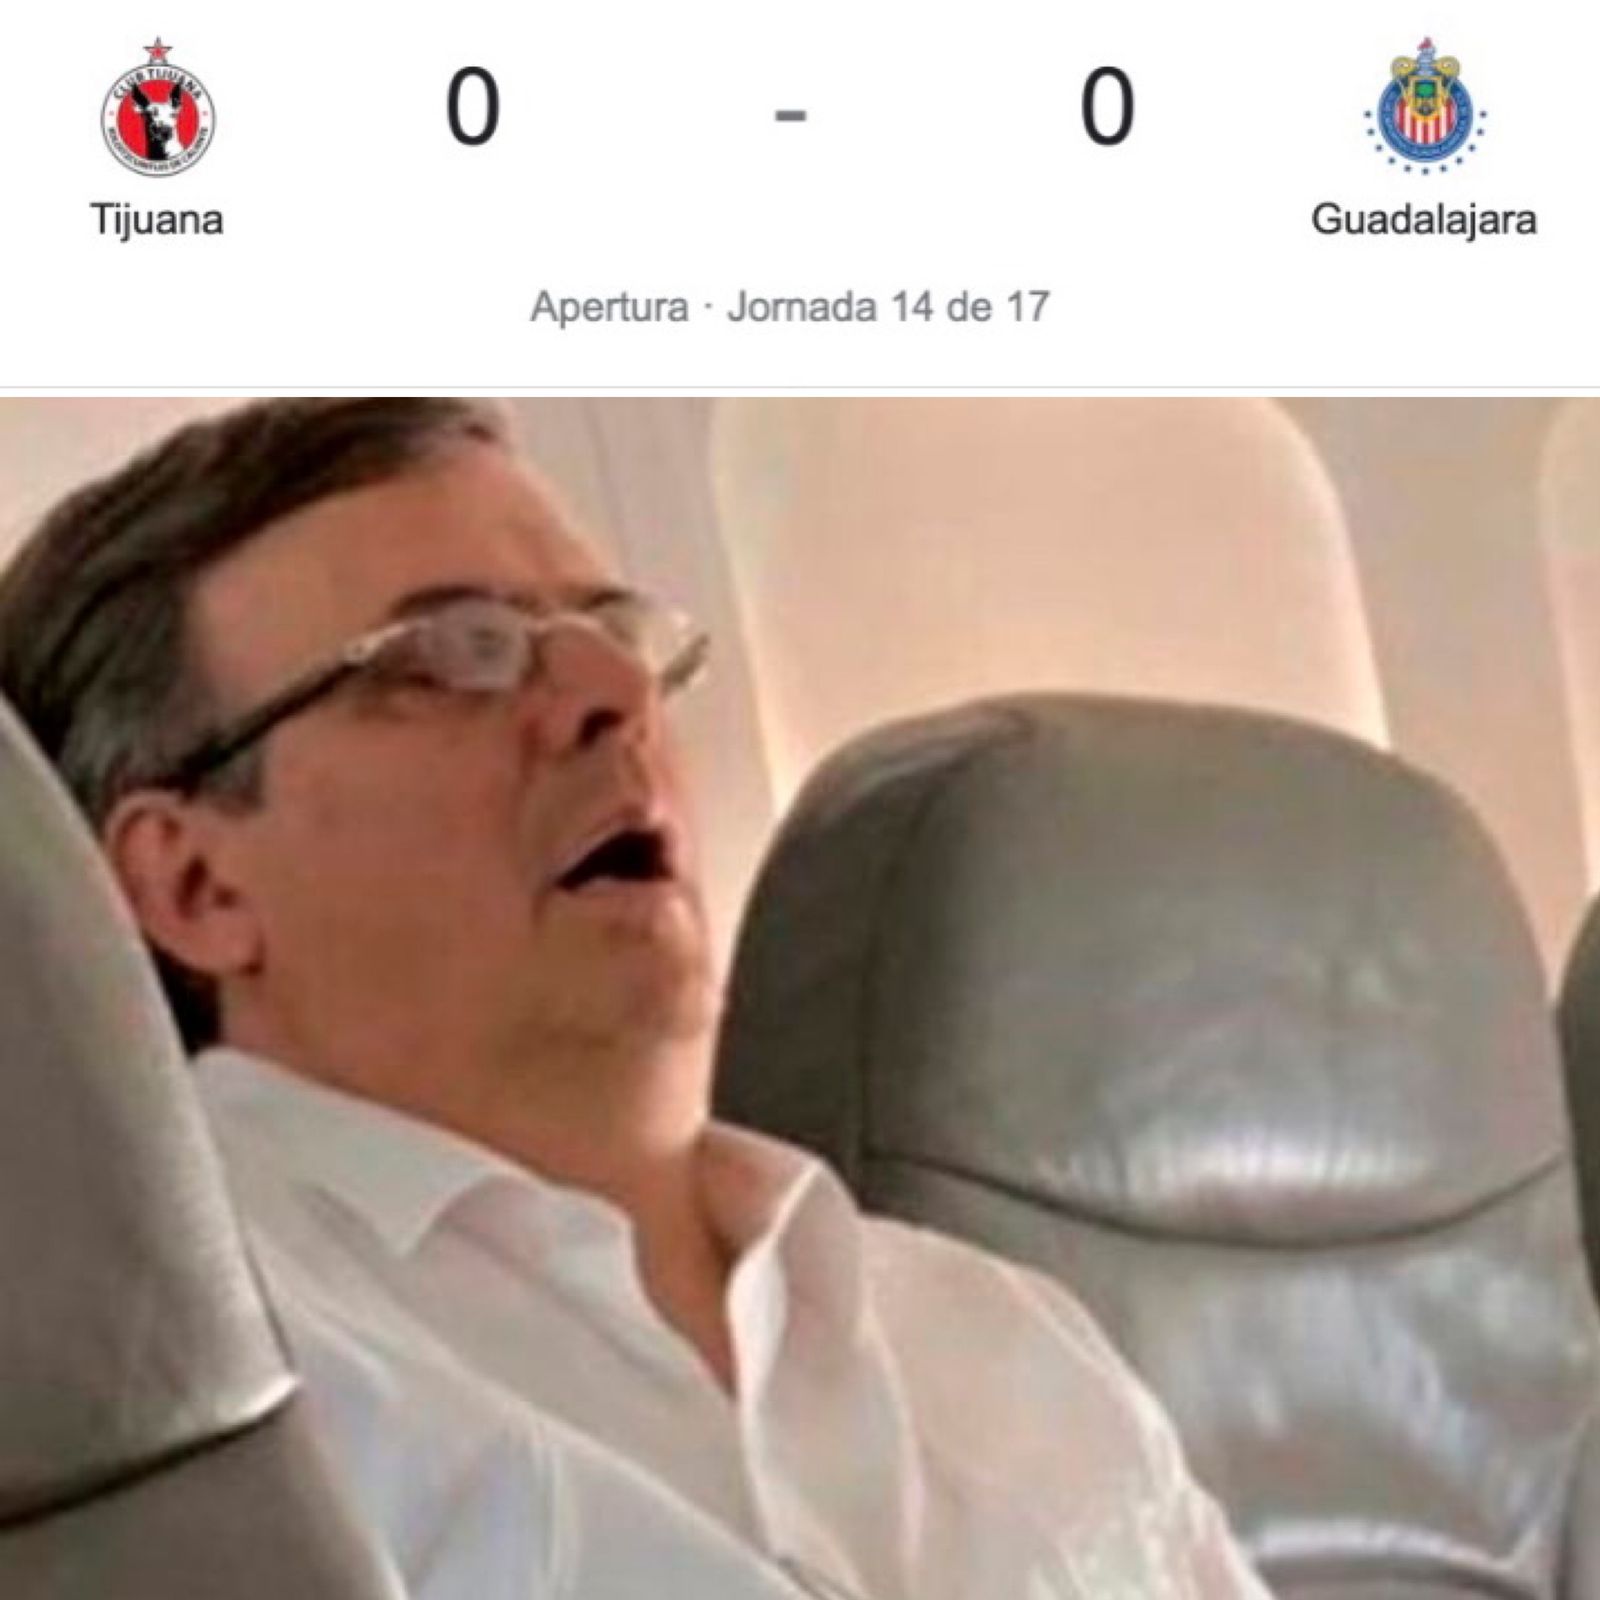 La patada de Cristante a jugador del Necaxa, el milagro de Pumas y los memes de la jornada 14 de la Liga MX